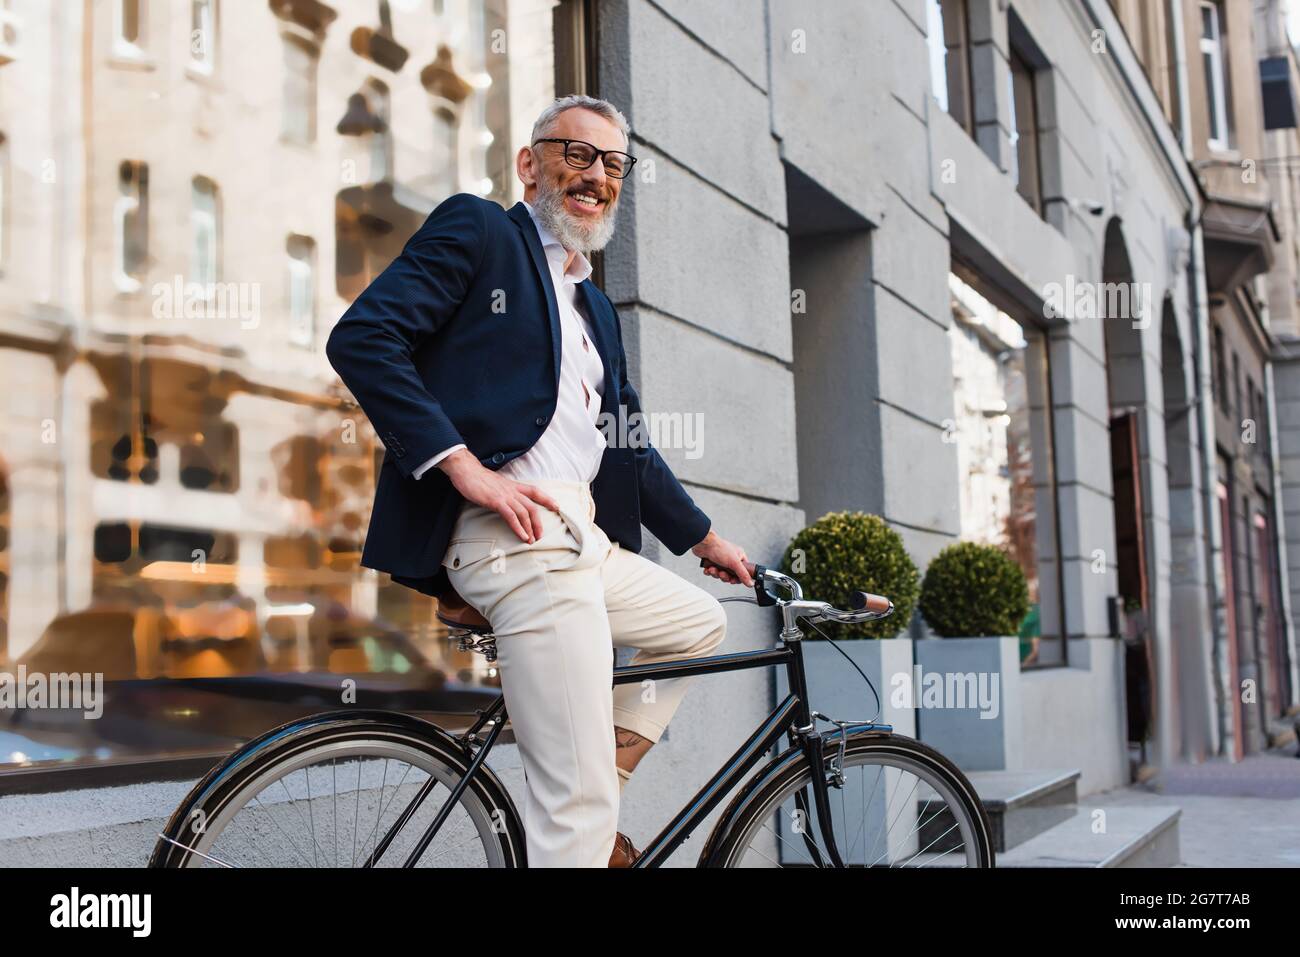 uomo sorridente bearded in occhiali che posa con la mano sull'anca e in bicicletta a cavallo su strada urbana Foto Stock